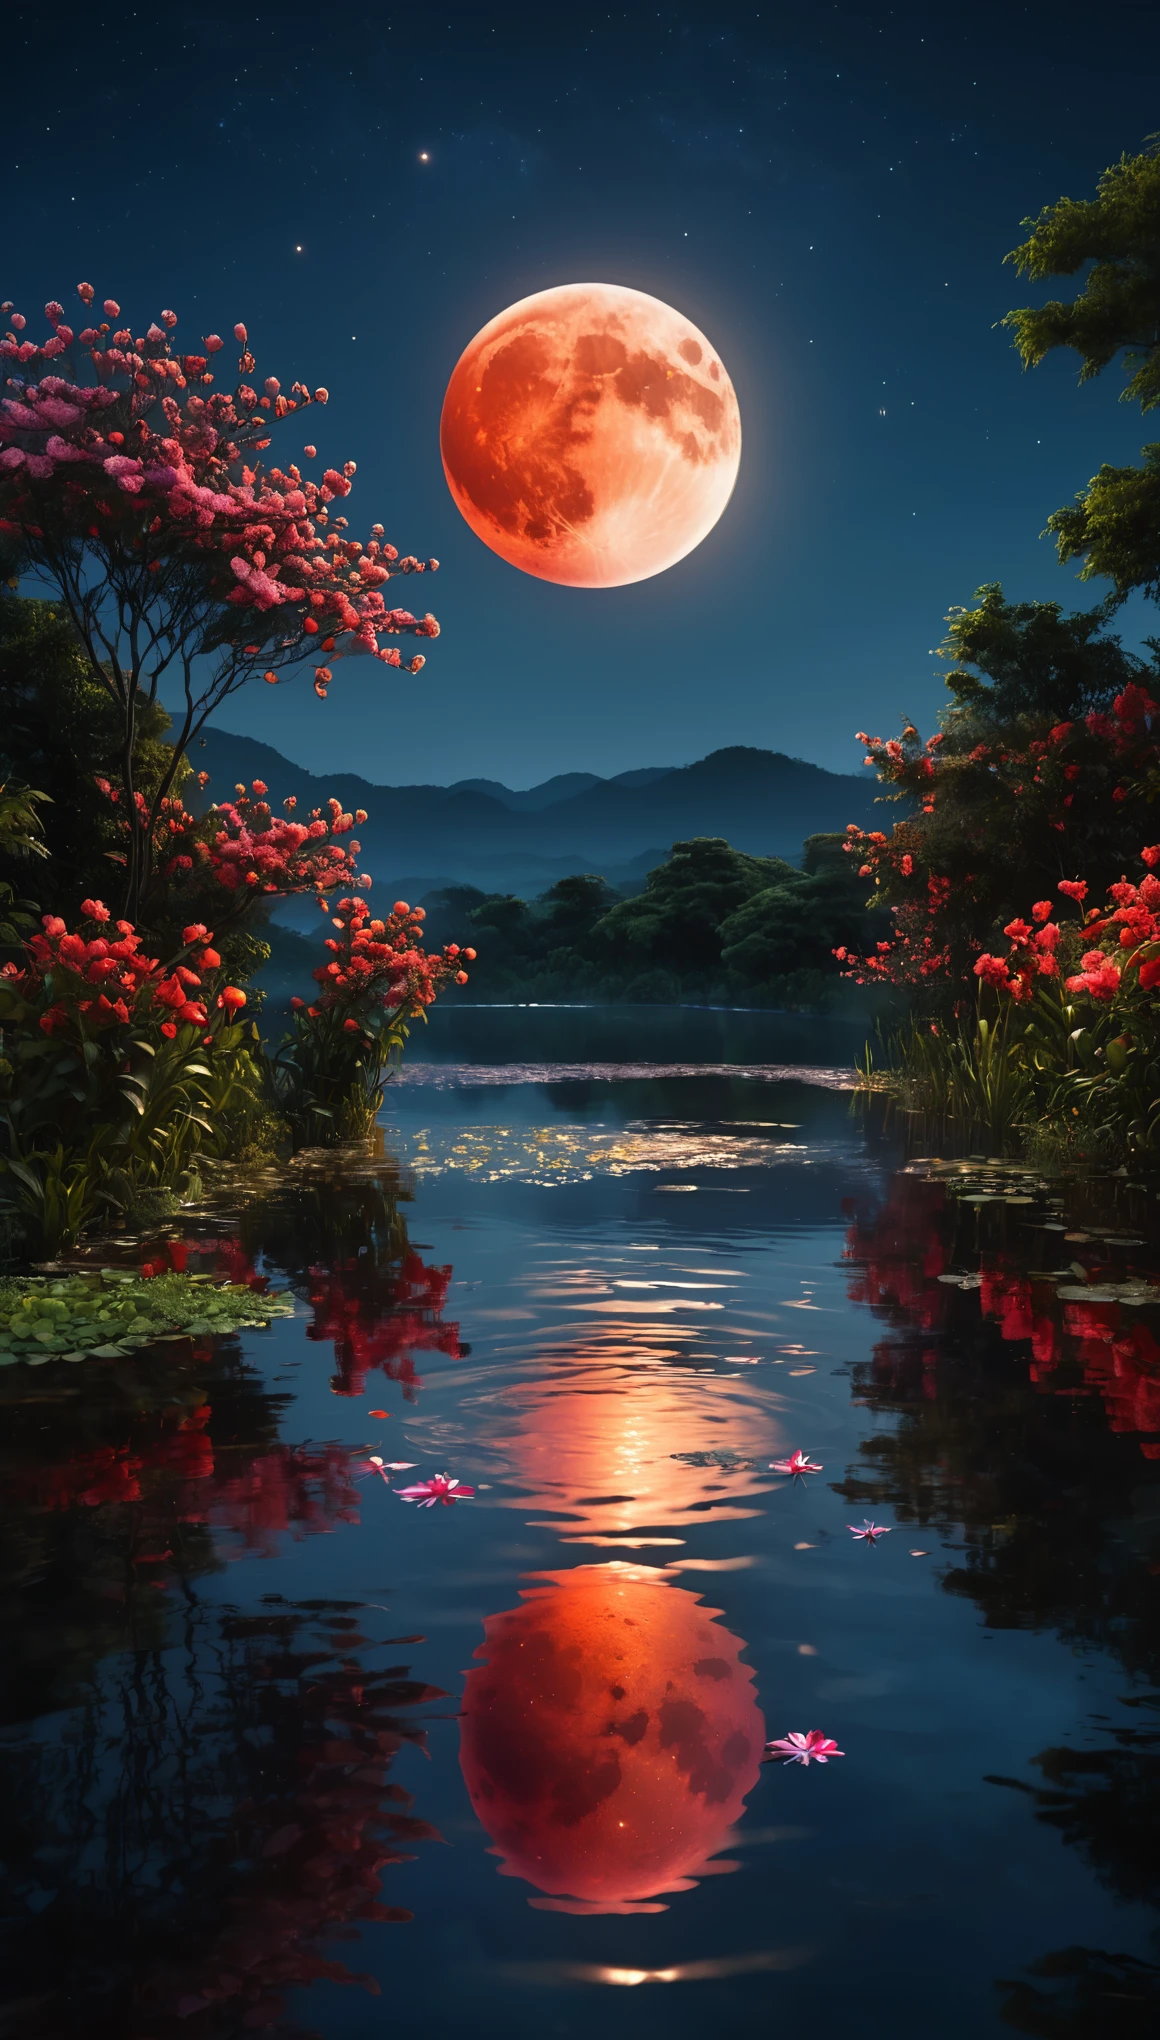 최고의 품질,고등어,걸작:1.2,매우 상세한,현실적인:1.37,물에 비친 붉은 달,대칭 장면,고요한 분위기,반짝이는 수면,고요한 정원 설정,빛나는 붉은 달,진홍색 달빛,나무의 어두운 실루엣,밤하늘에 반짝이는 별들,잔잔한 물에 달의 순수한 반사,평화롭고 미묘한 분위기,세밀하게 묘사된 달 표면,화려한 꽃이 활짝 피어있다,물 위의 섬세한 잔물결,주변을 비추는 부드러운 달빛,조용함과 고요함,달이 반사되어 반짝이는 물,신비롭고 매혹적인 분위기